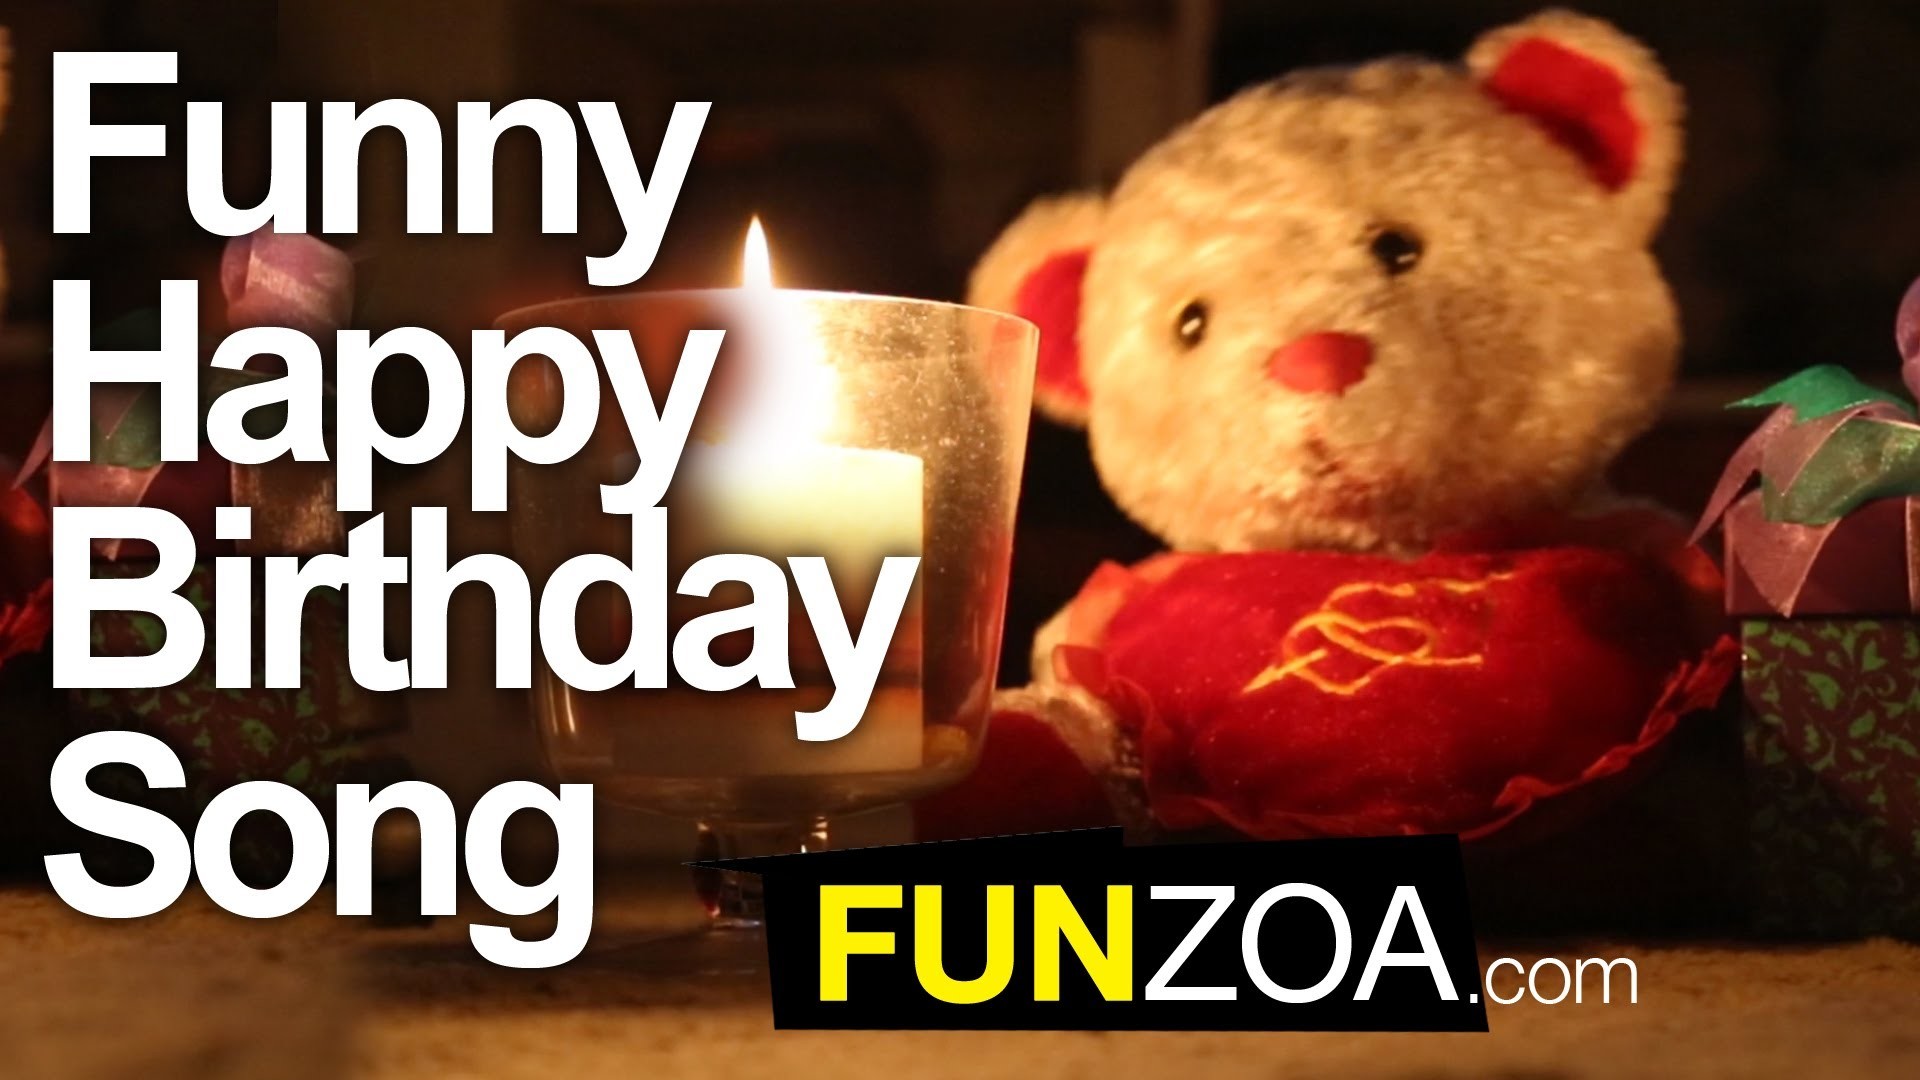 1920x1080 Funny Happy Birthday Song - Cute Teddy Sings Very Funny Birthday Song |  Funzoa Mimi Teddy - YouTube